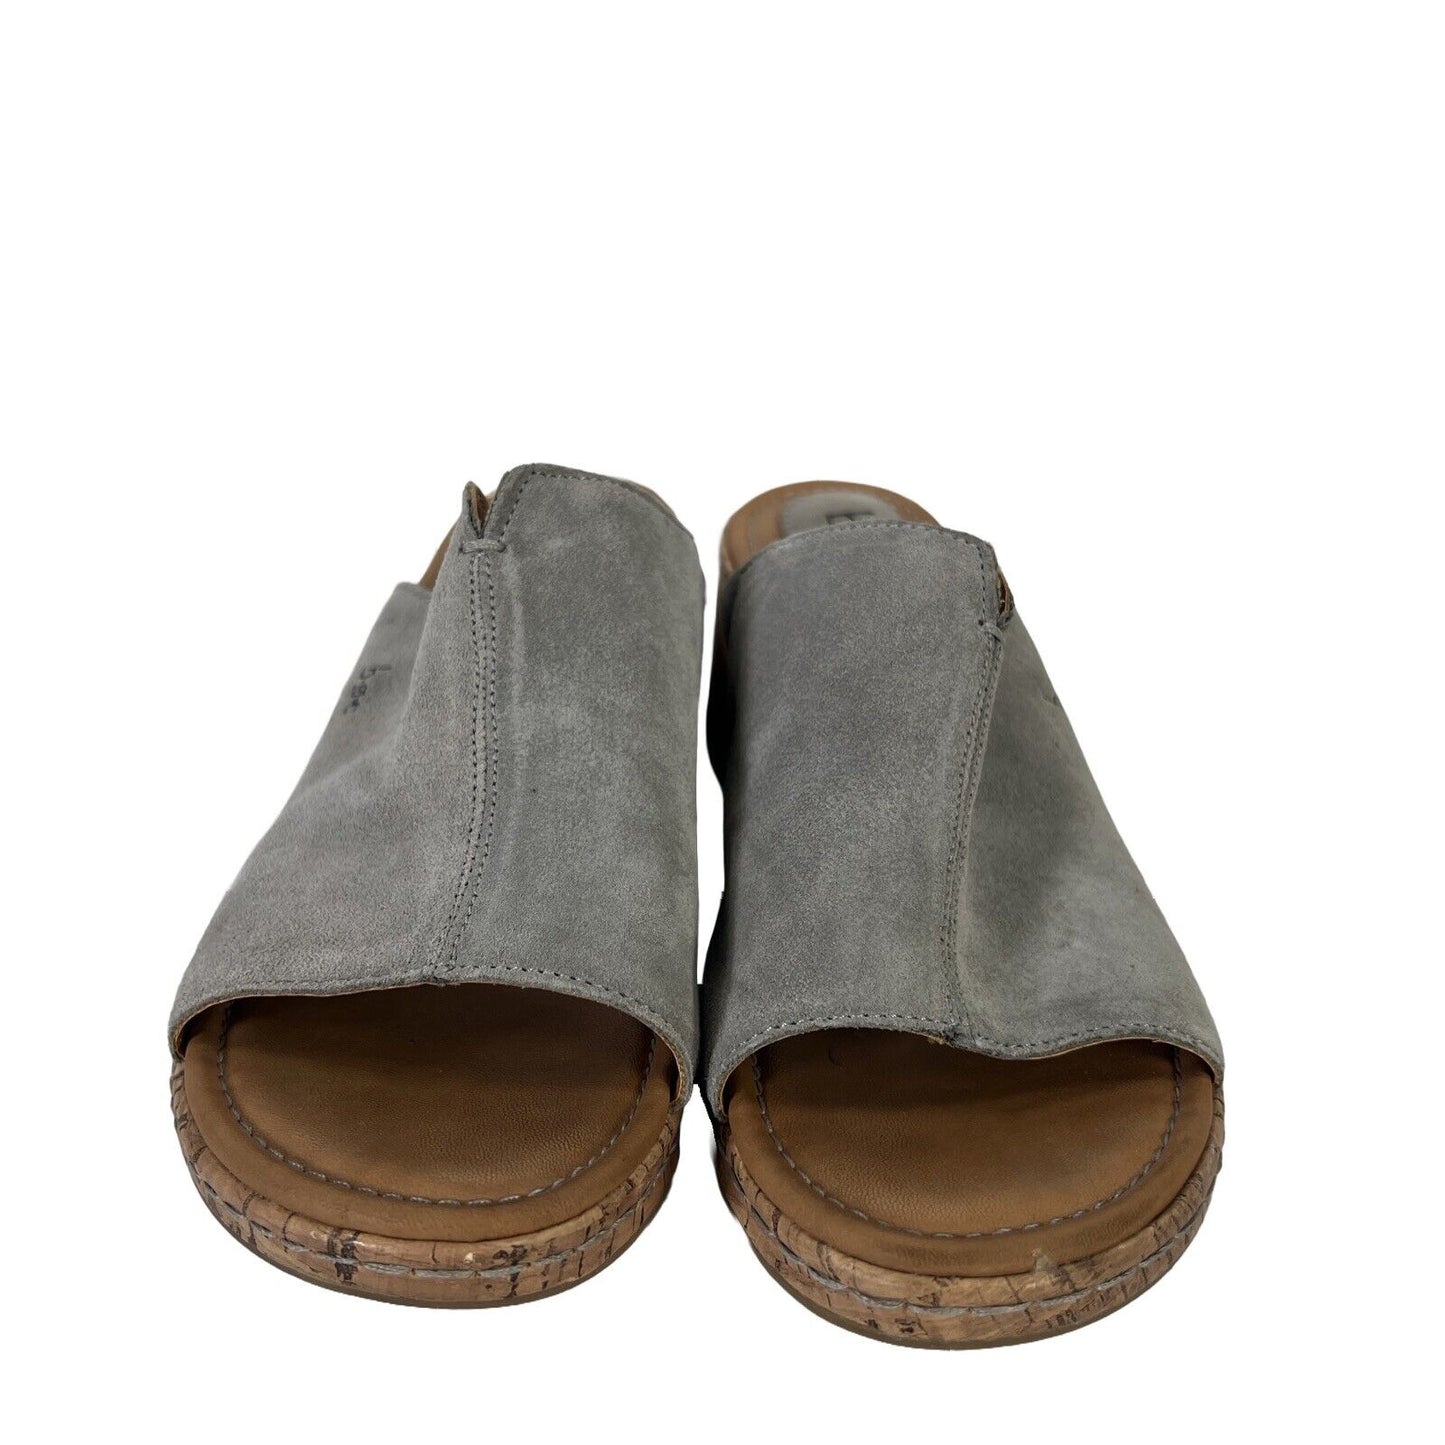 BOC Women's Gray Suede Open Toe Wedge Sandals - 8